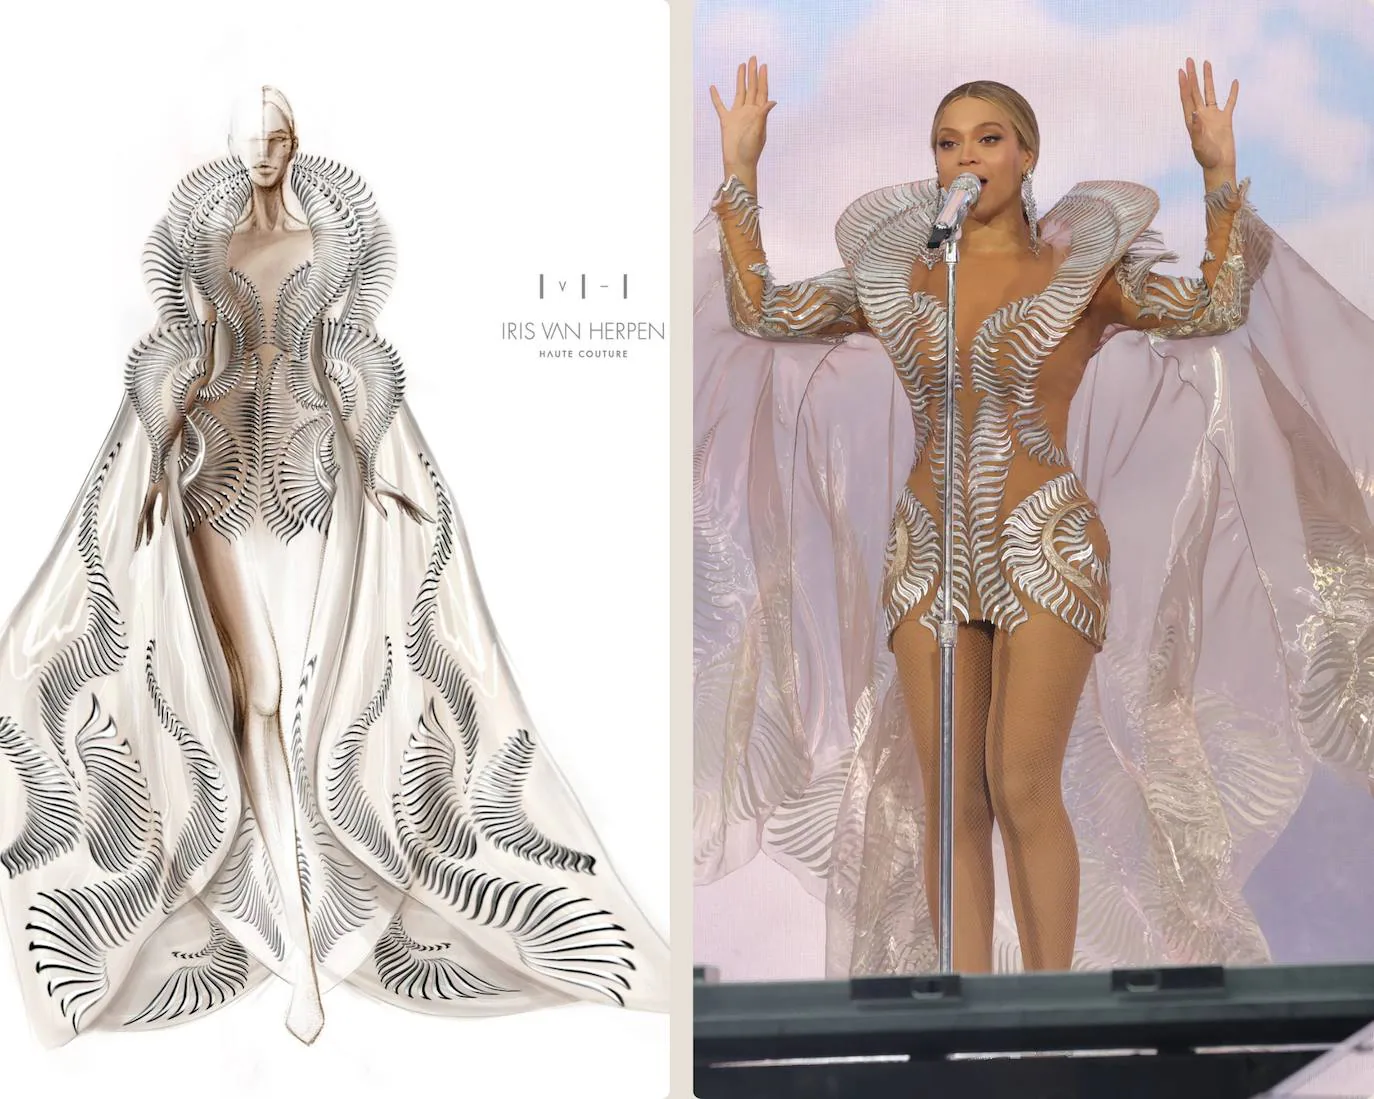 A la izquierda, el boceto del diseño. A la derecha, Beyoncé con el vestido en el concierto que dio en Ámsterdam.